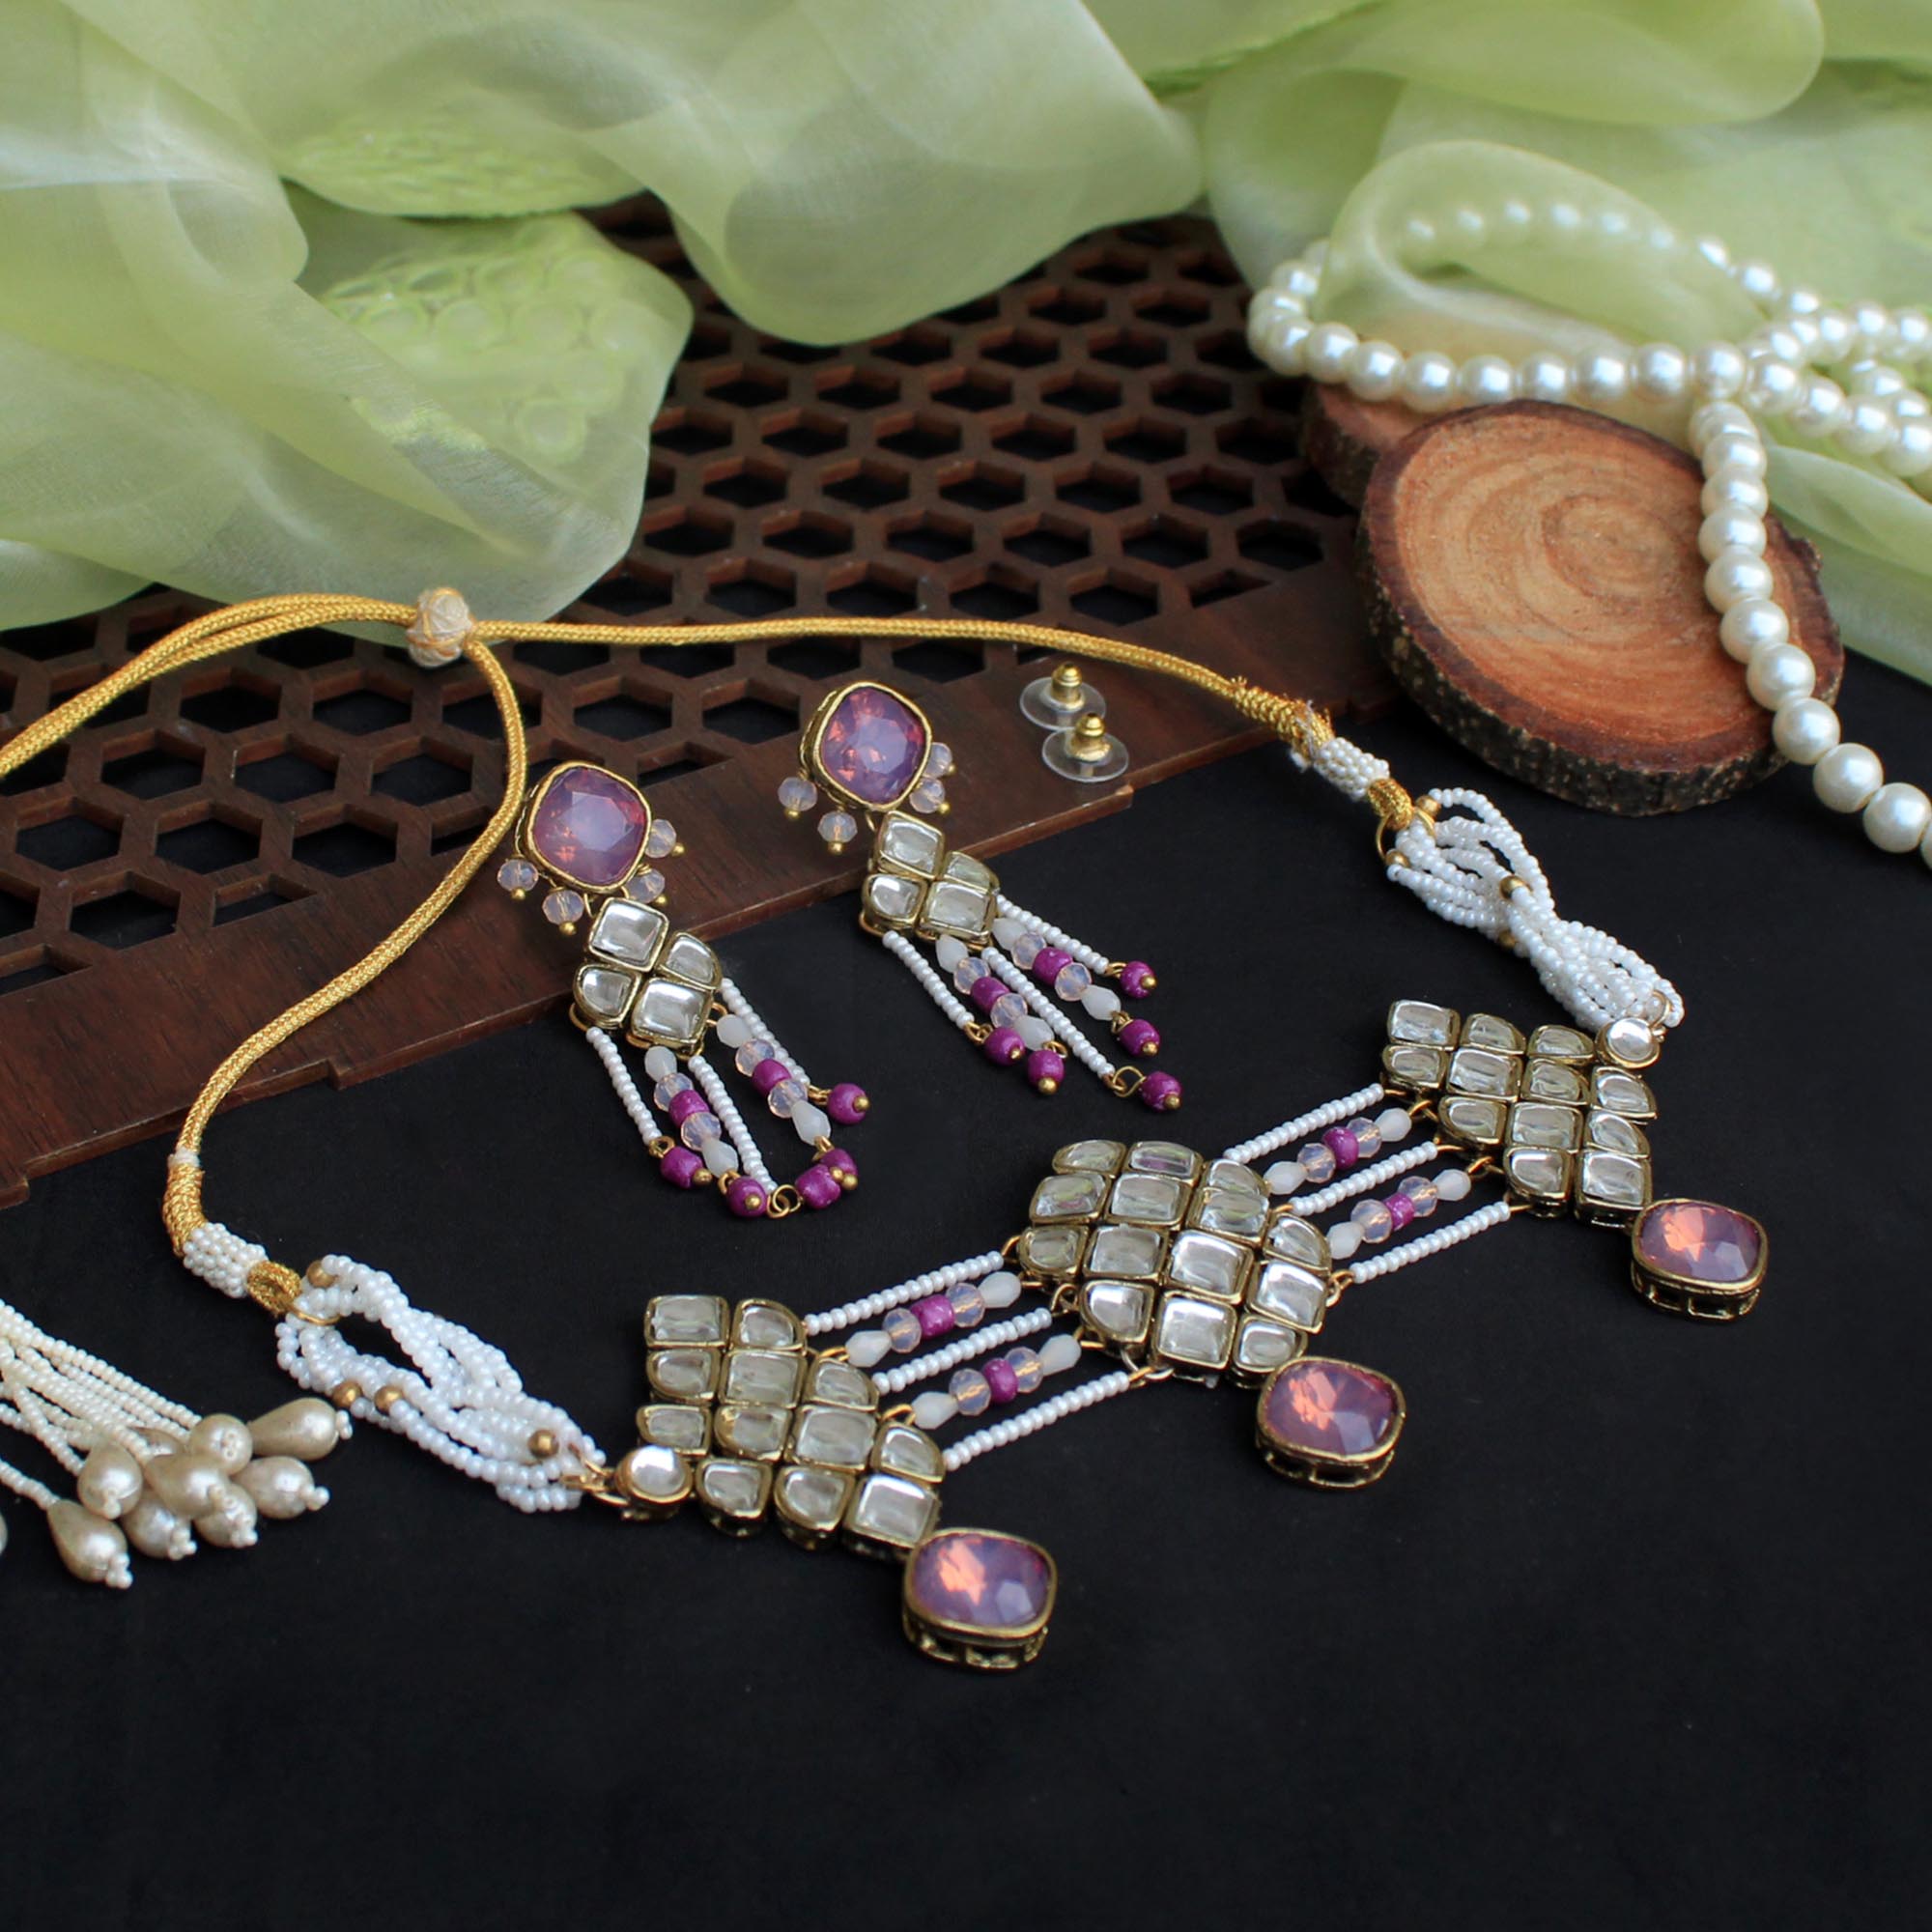 Beabhika Purple Kundan Earrings White Beads Traditional Earrings Designer Kundan Ear Studs Daily Wear Office Wear Party Wear Function Jewelry Fashion Earrings Online Cash On Delivery 